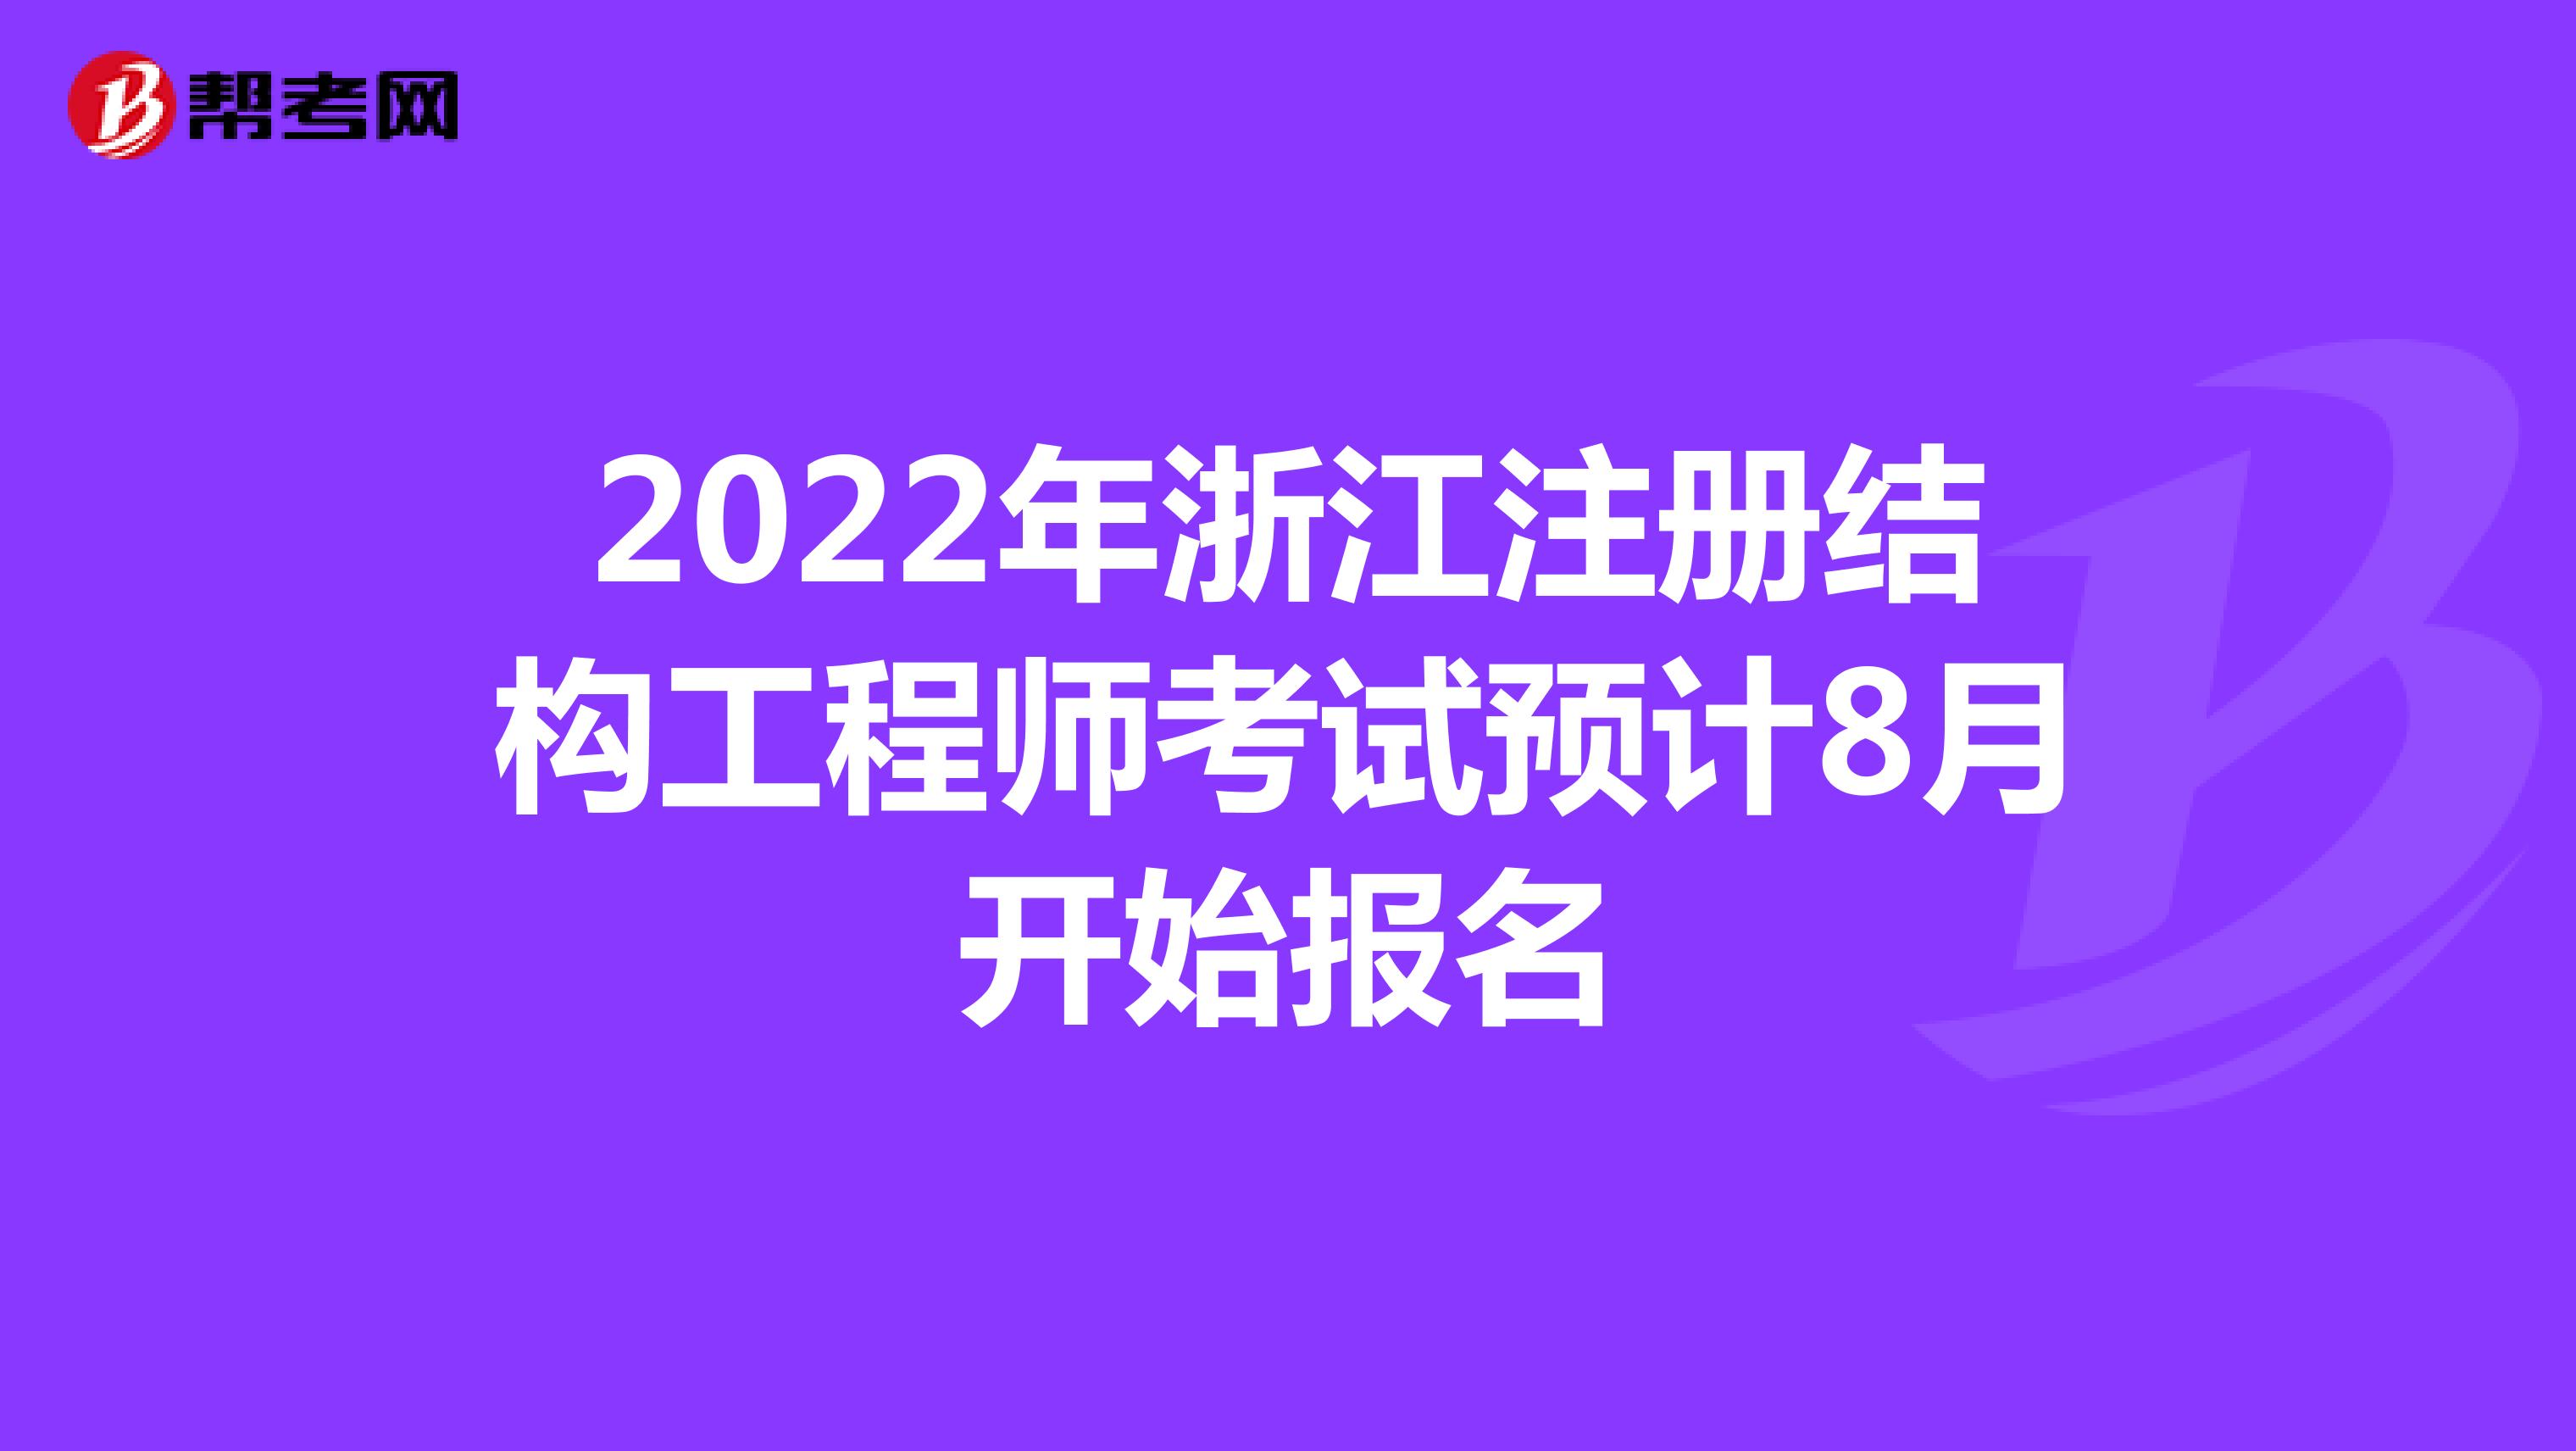 2022年浙江注册结构工程师考试预计8月开始报名